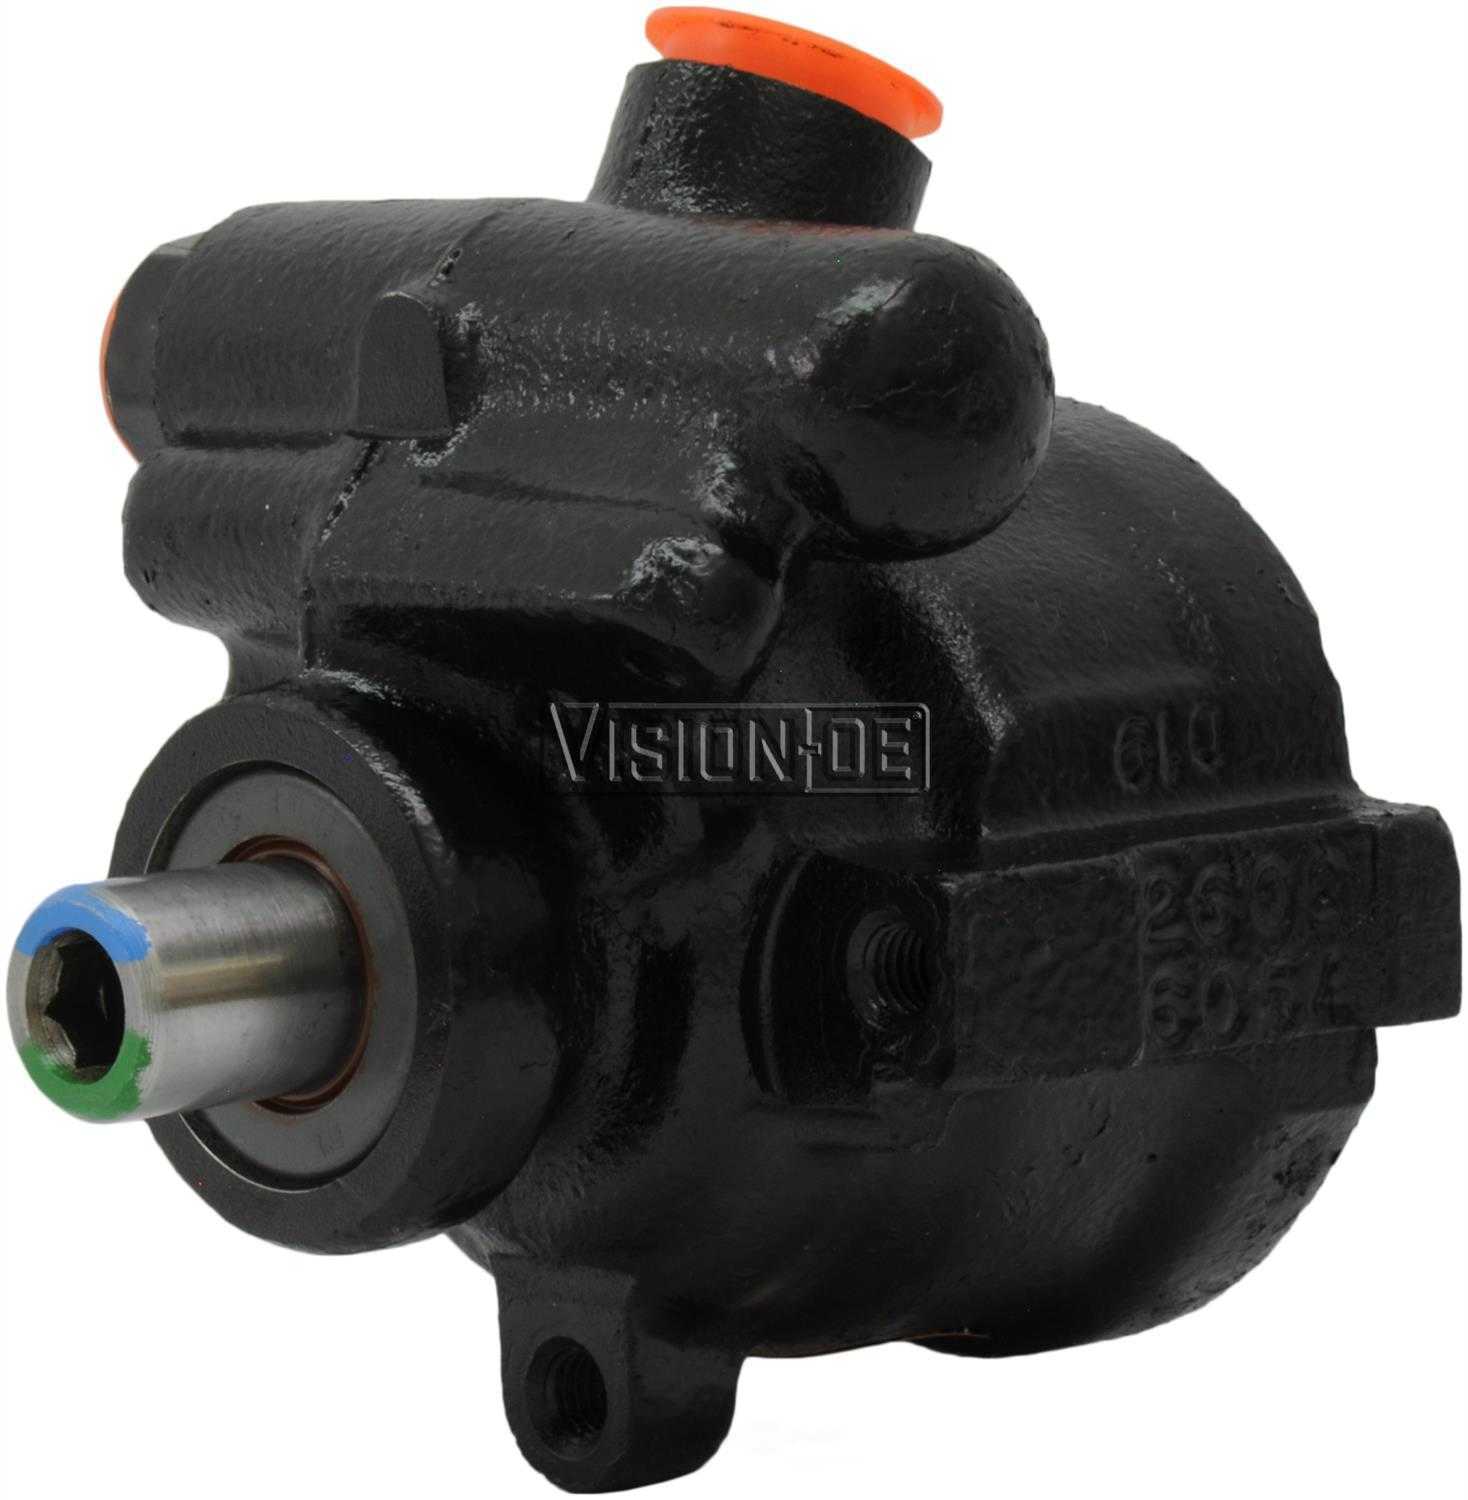 VISION-OE - Reman Power Steering Pump - Part Number: 734-0137